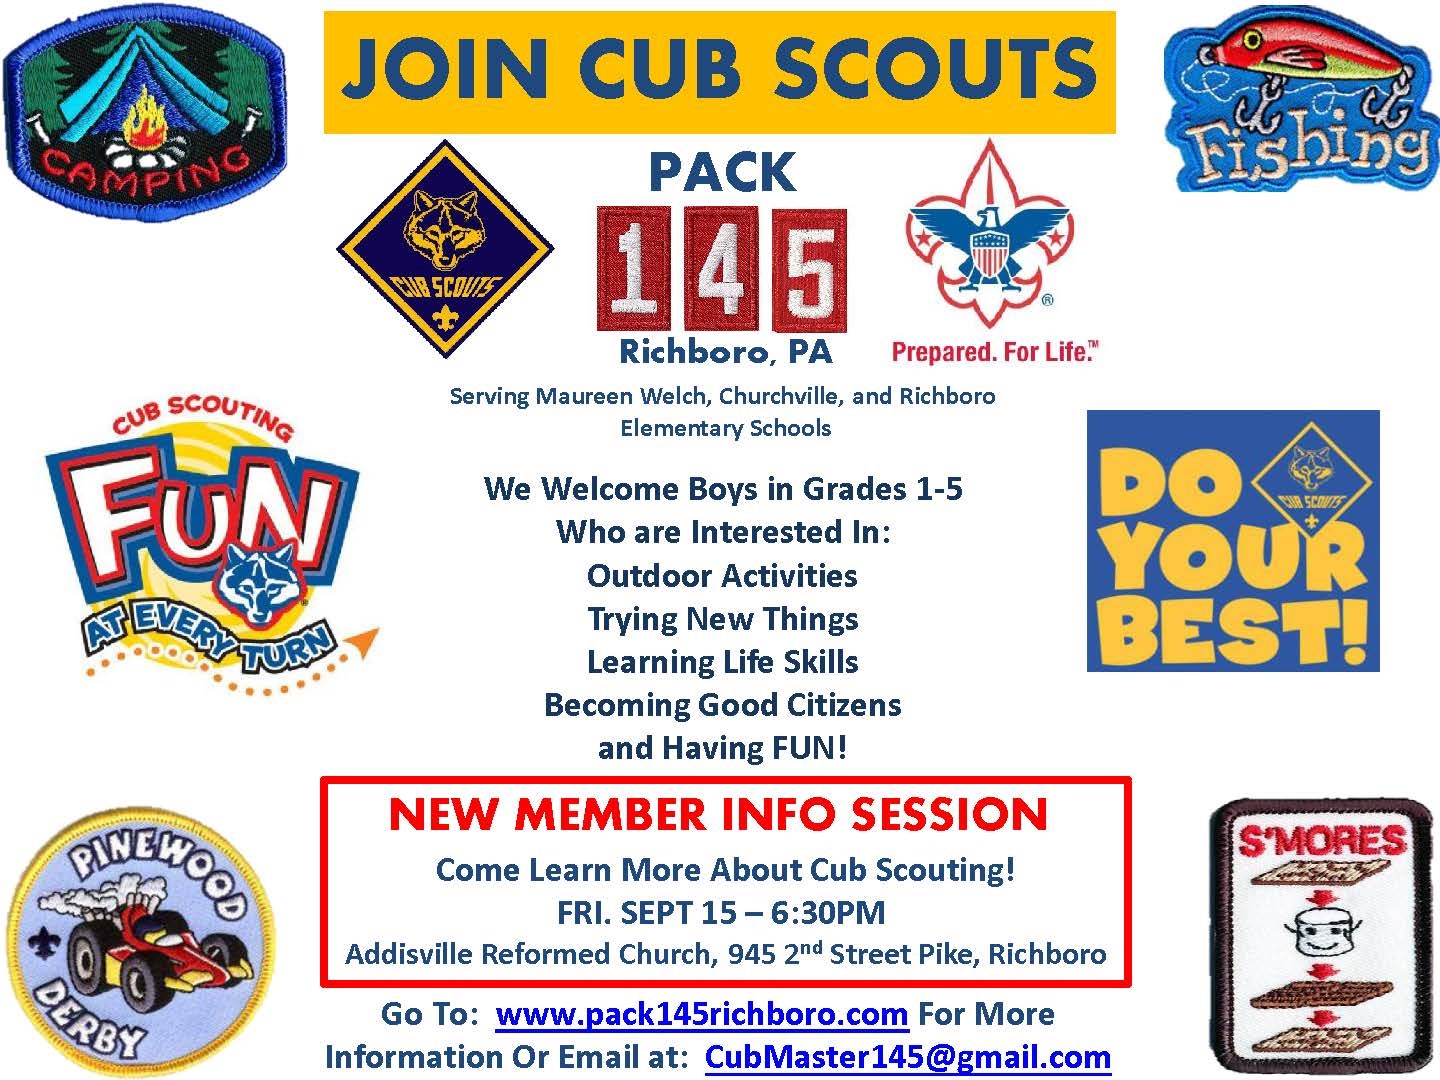 Cub scout recruiting video